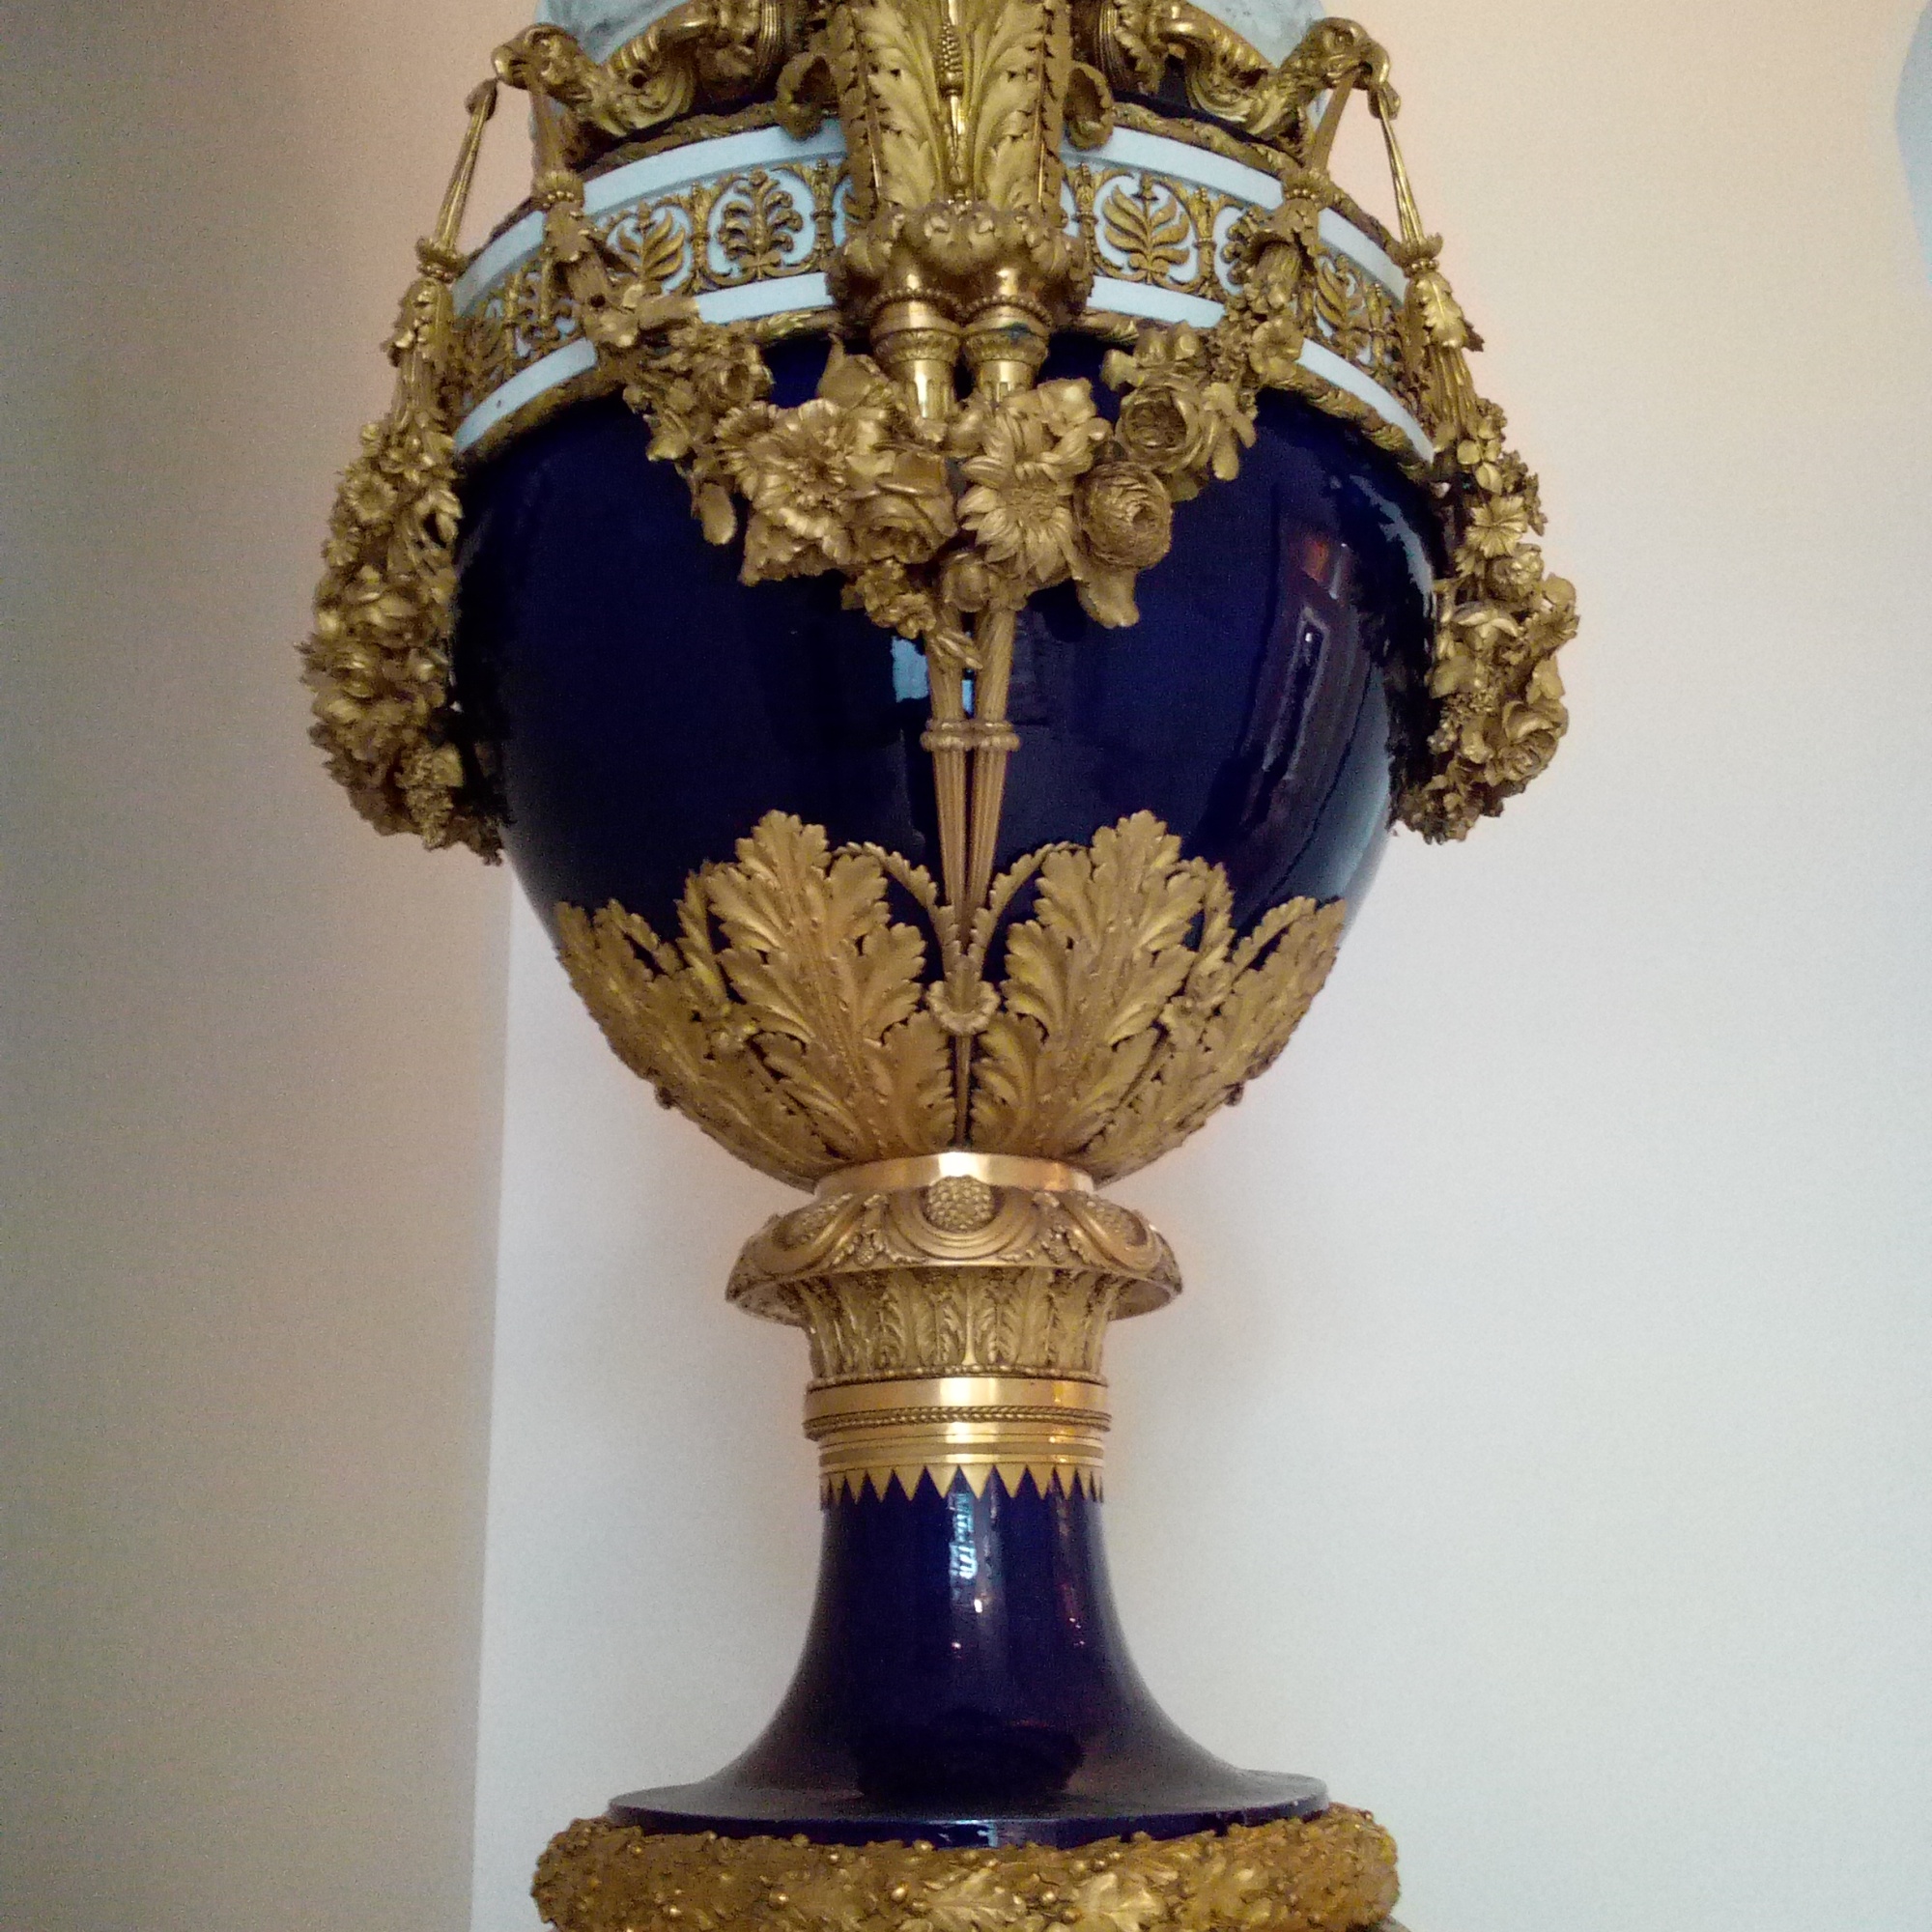 Grand Vase à fond beau bleu dit aussi Grand Vase Medicis Louvre